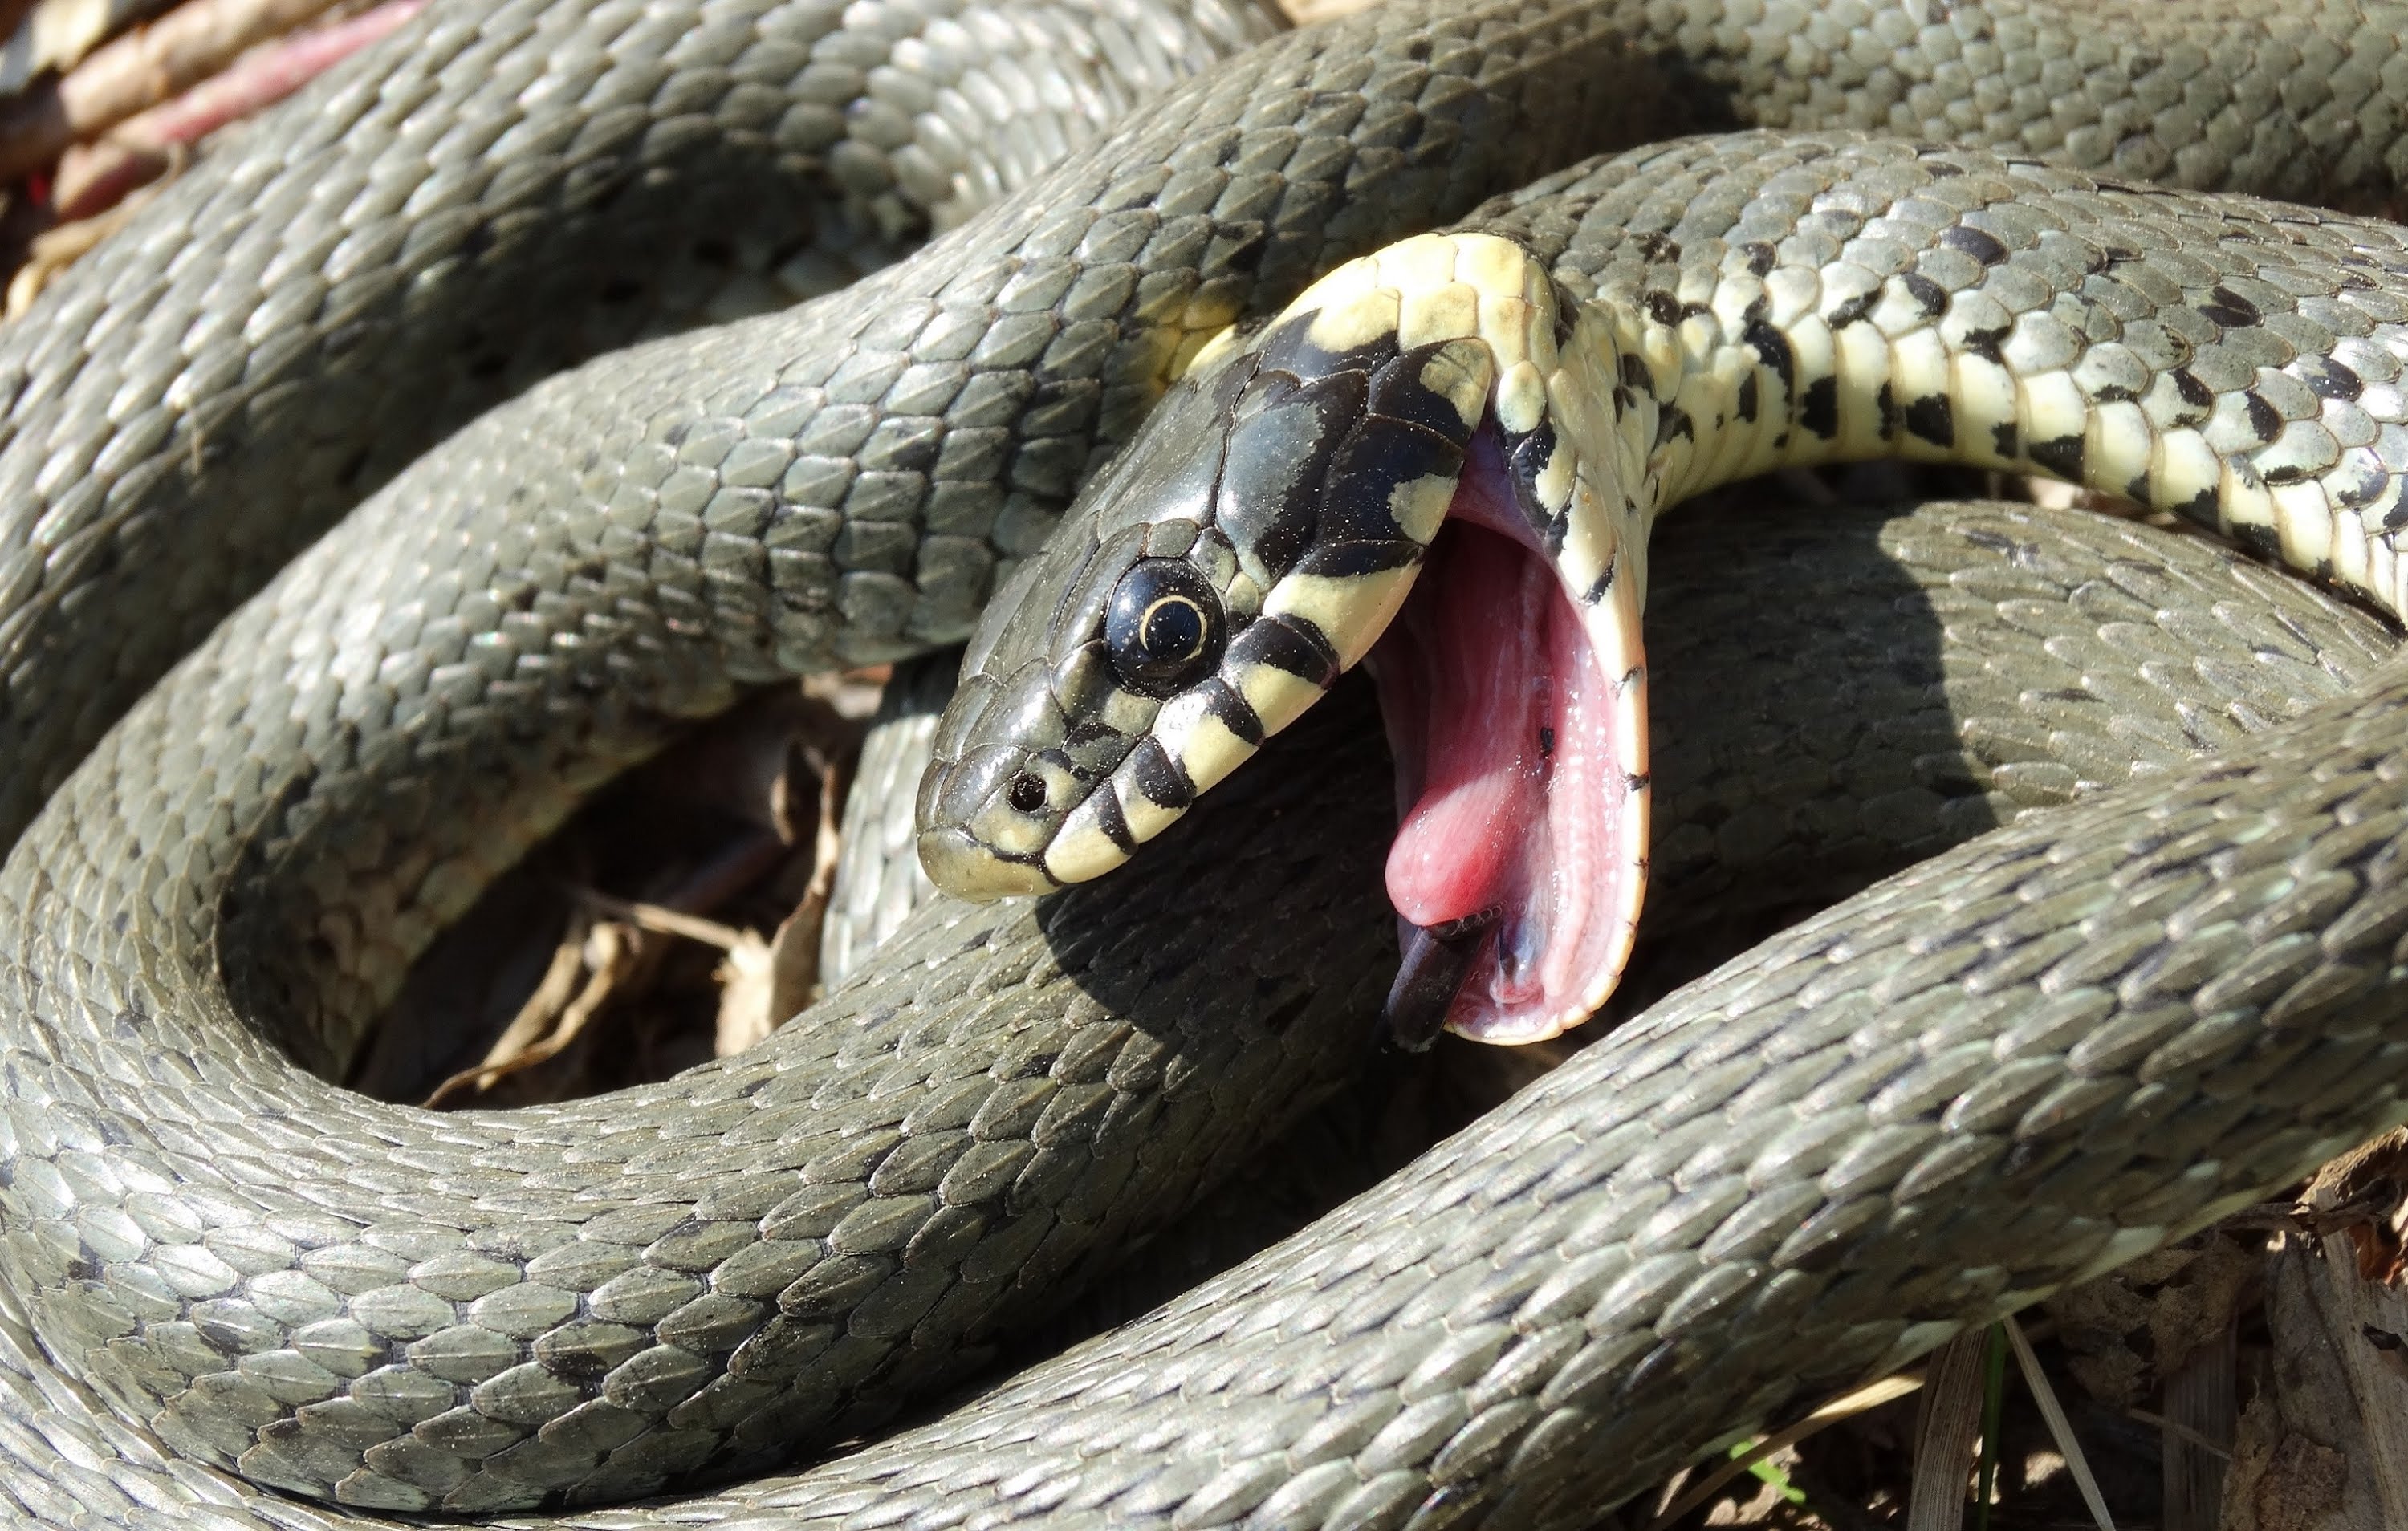 Grass Snake Playing Dead / Ringelnatter stellt sich tot - YouTube